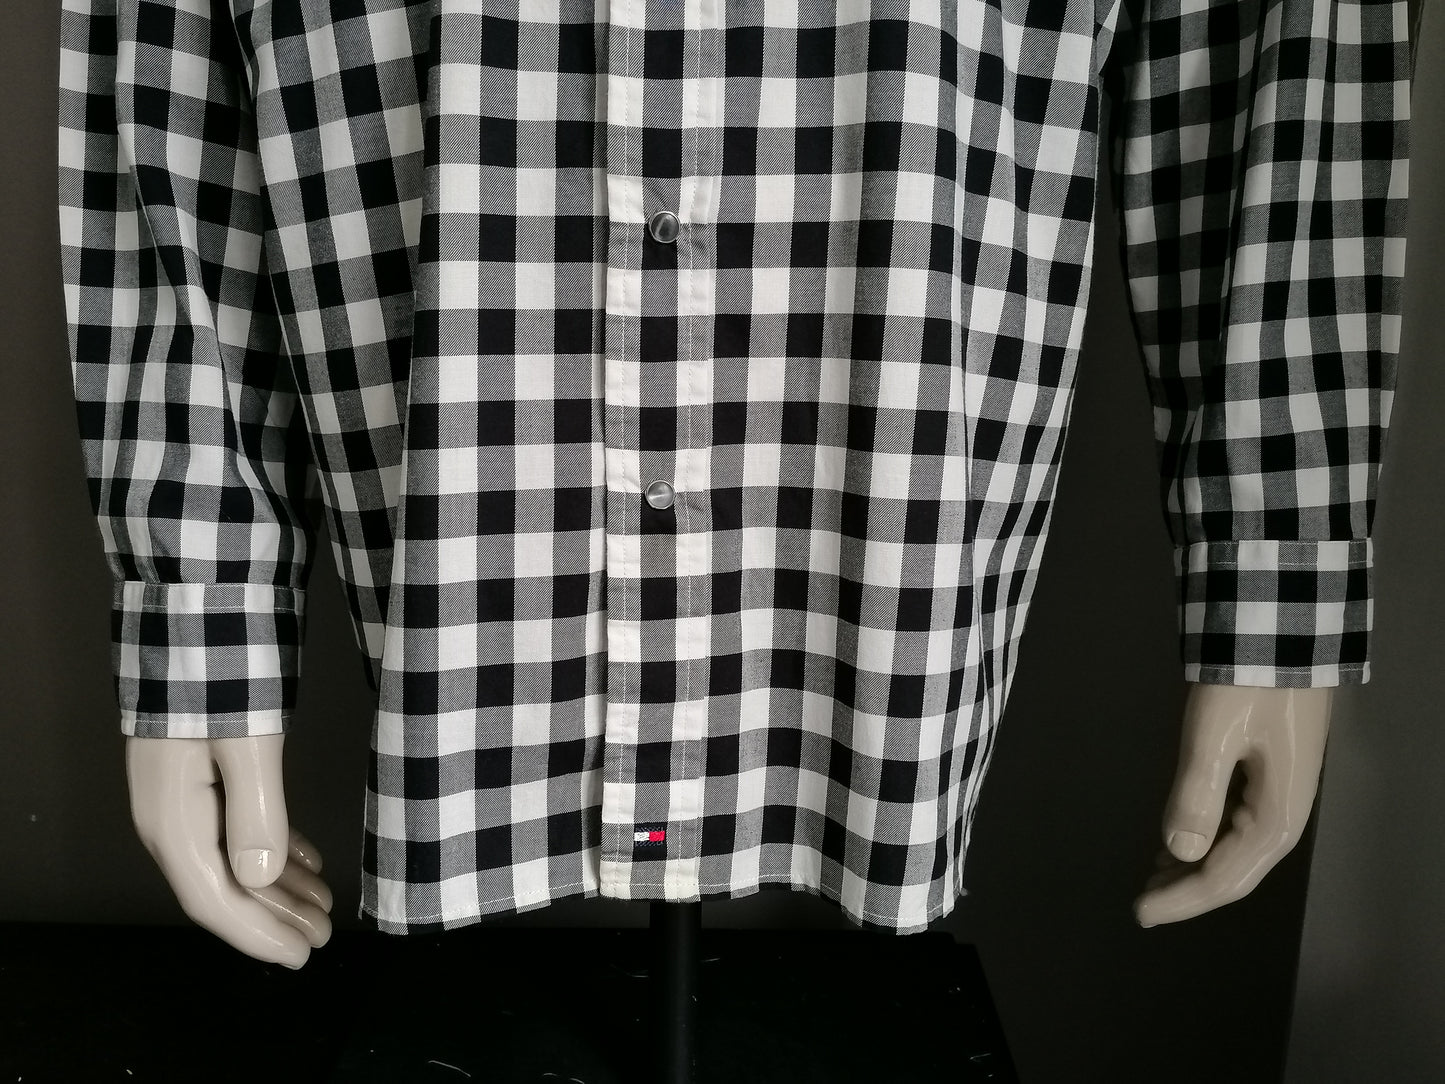 Camicia da Tommy Hilfiger con borchie di stampa. Black White a quadretti. Dimensione XL.